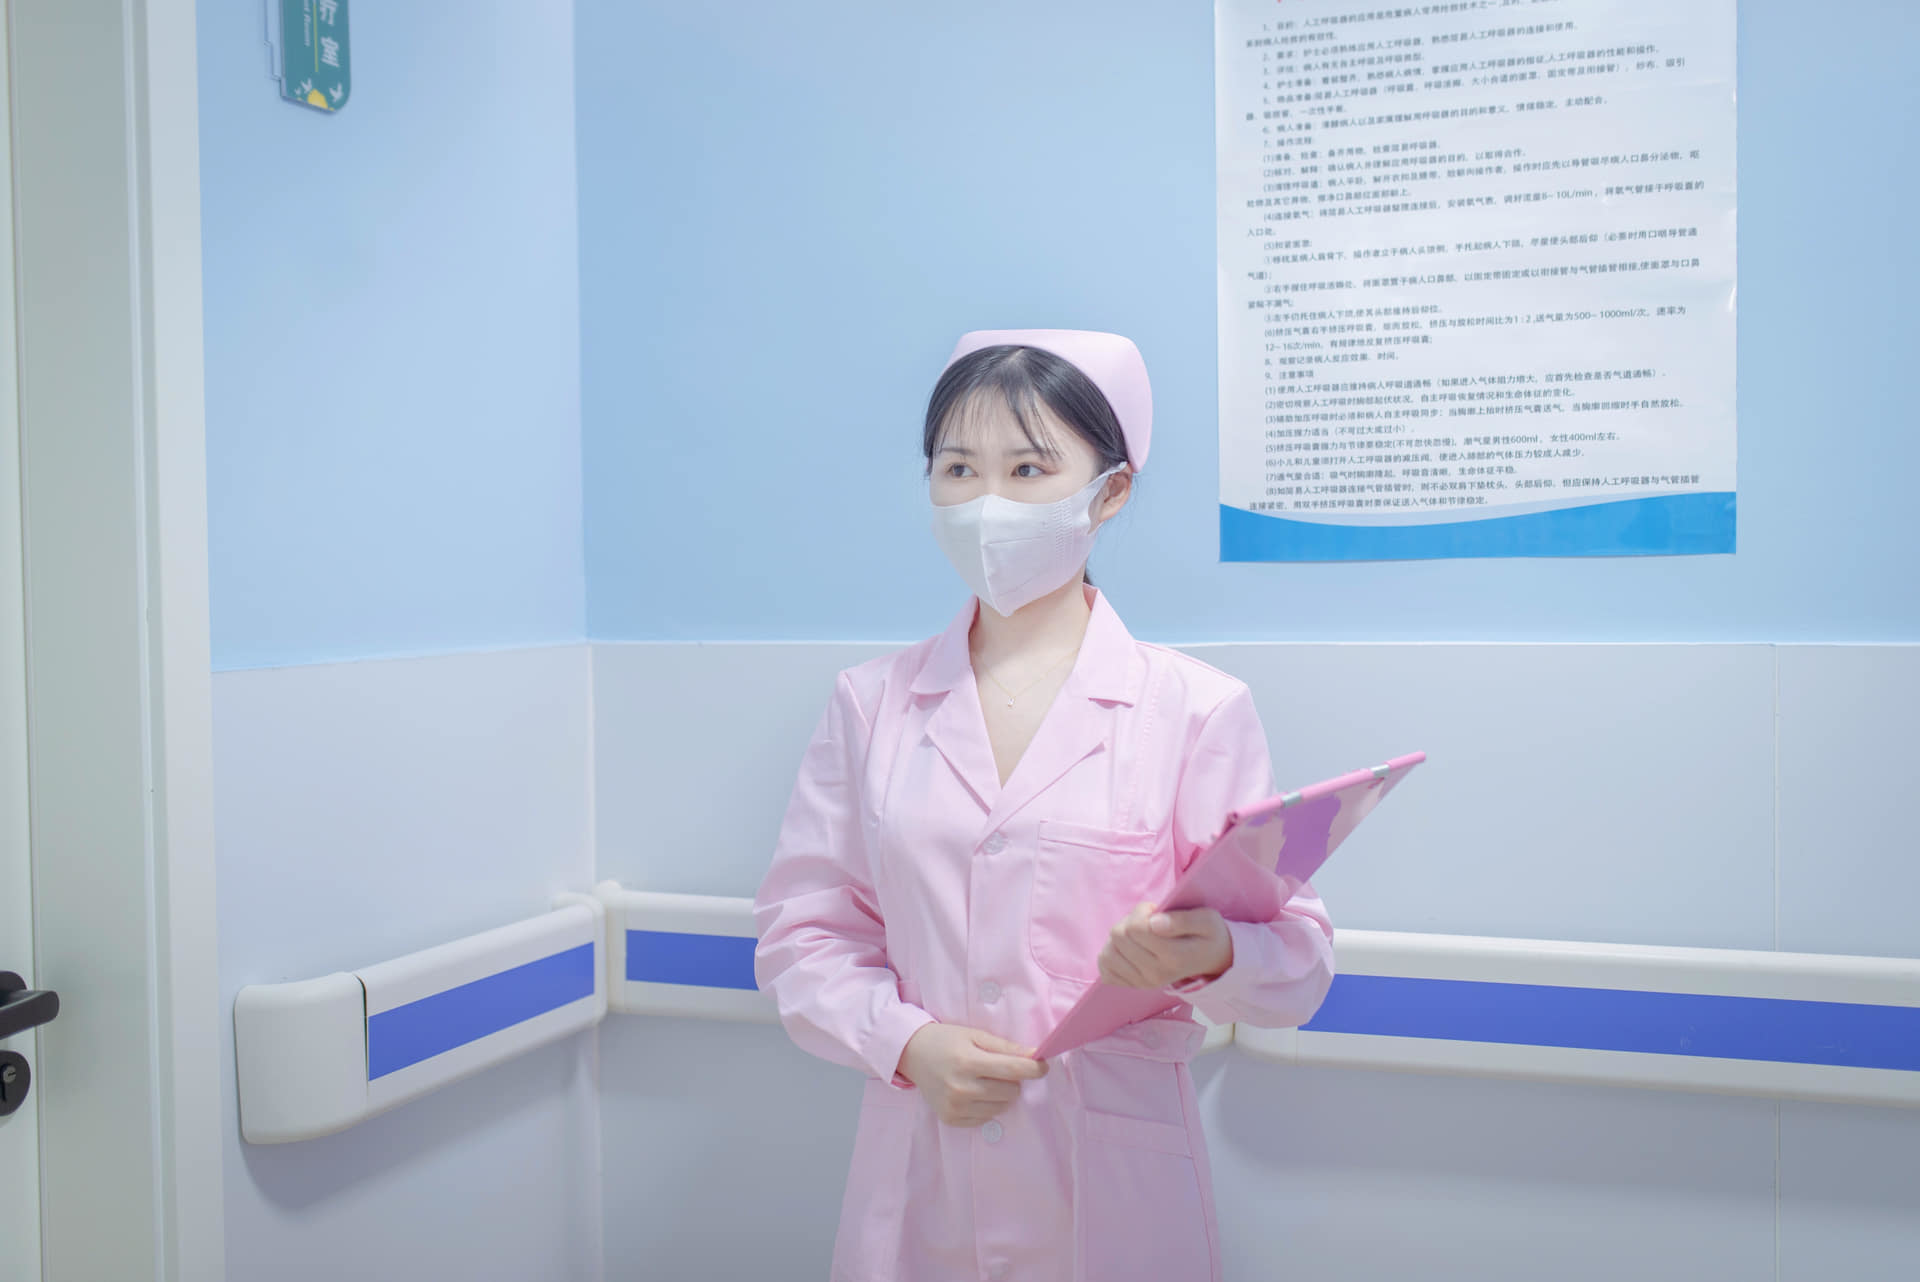 루추간호사, 핑크빛 유혹